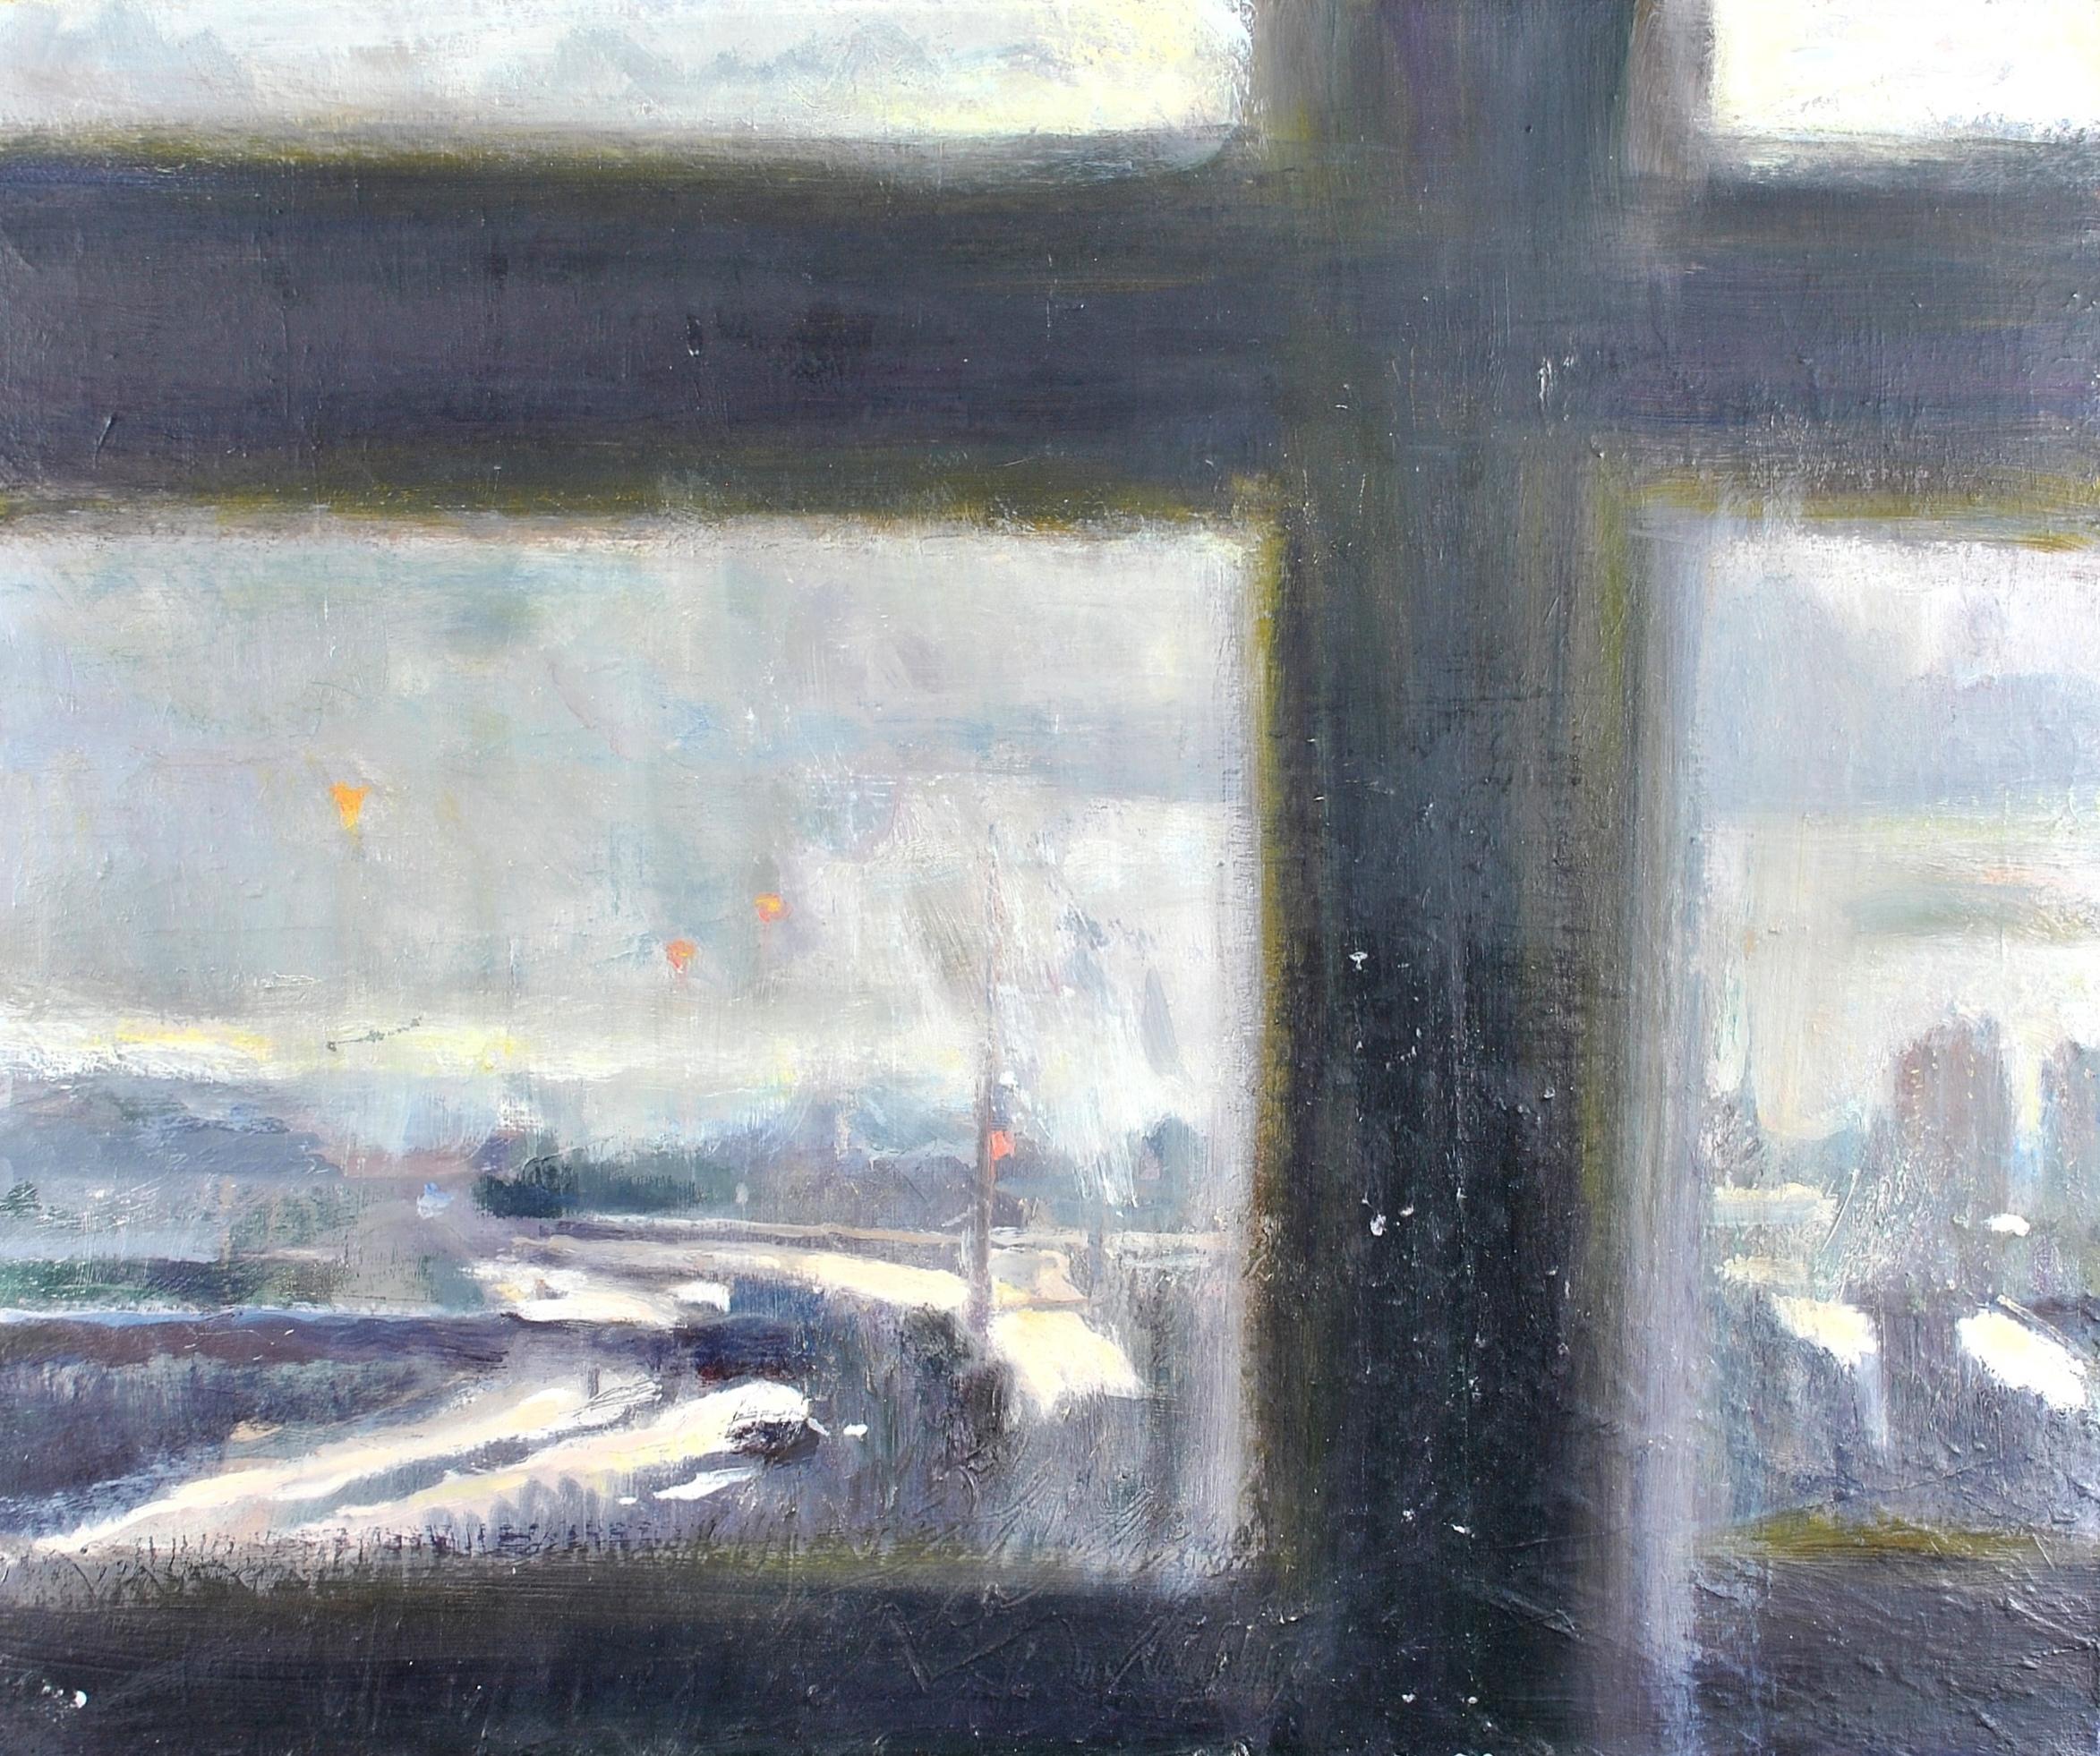 Landscape Painting Belinda Gilbert Scott - Vigil II - Paysage d'hiver recouvert de neige à travers une fenêtre Peinture impressionniste